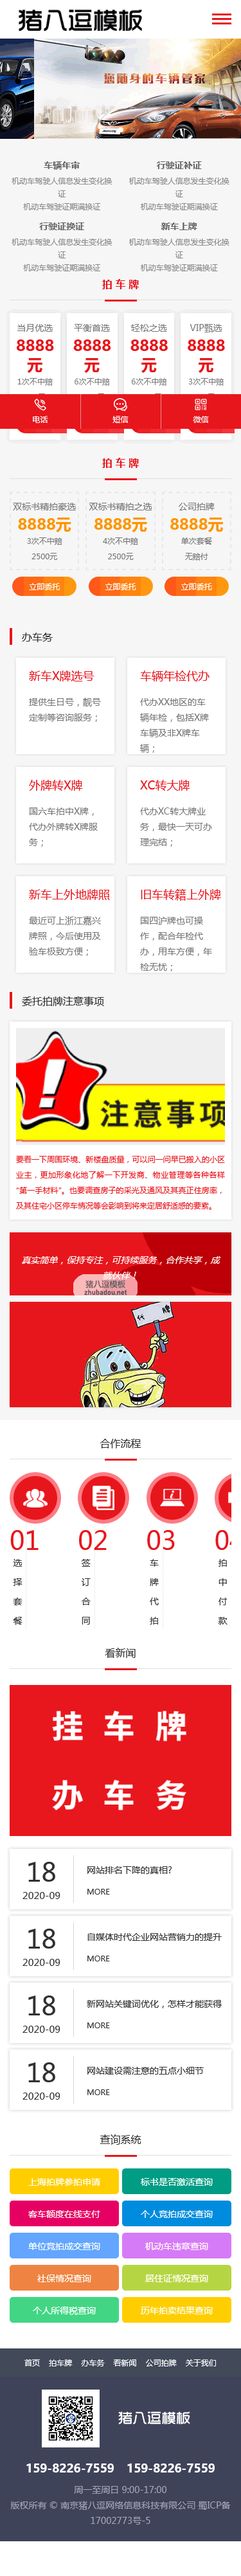 帝國cms汽車(chē)上牌挂牌服務網站模闆車(chē)輛上牌流程